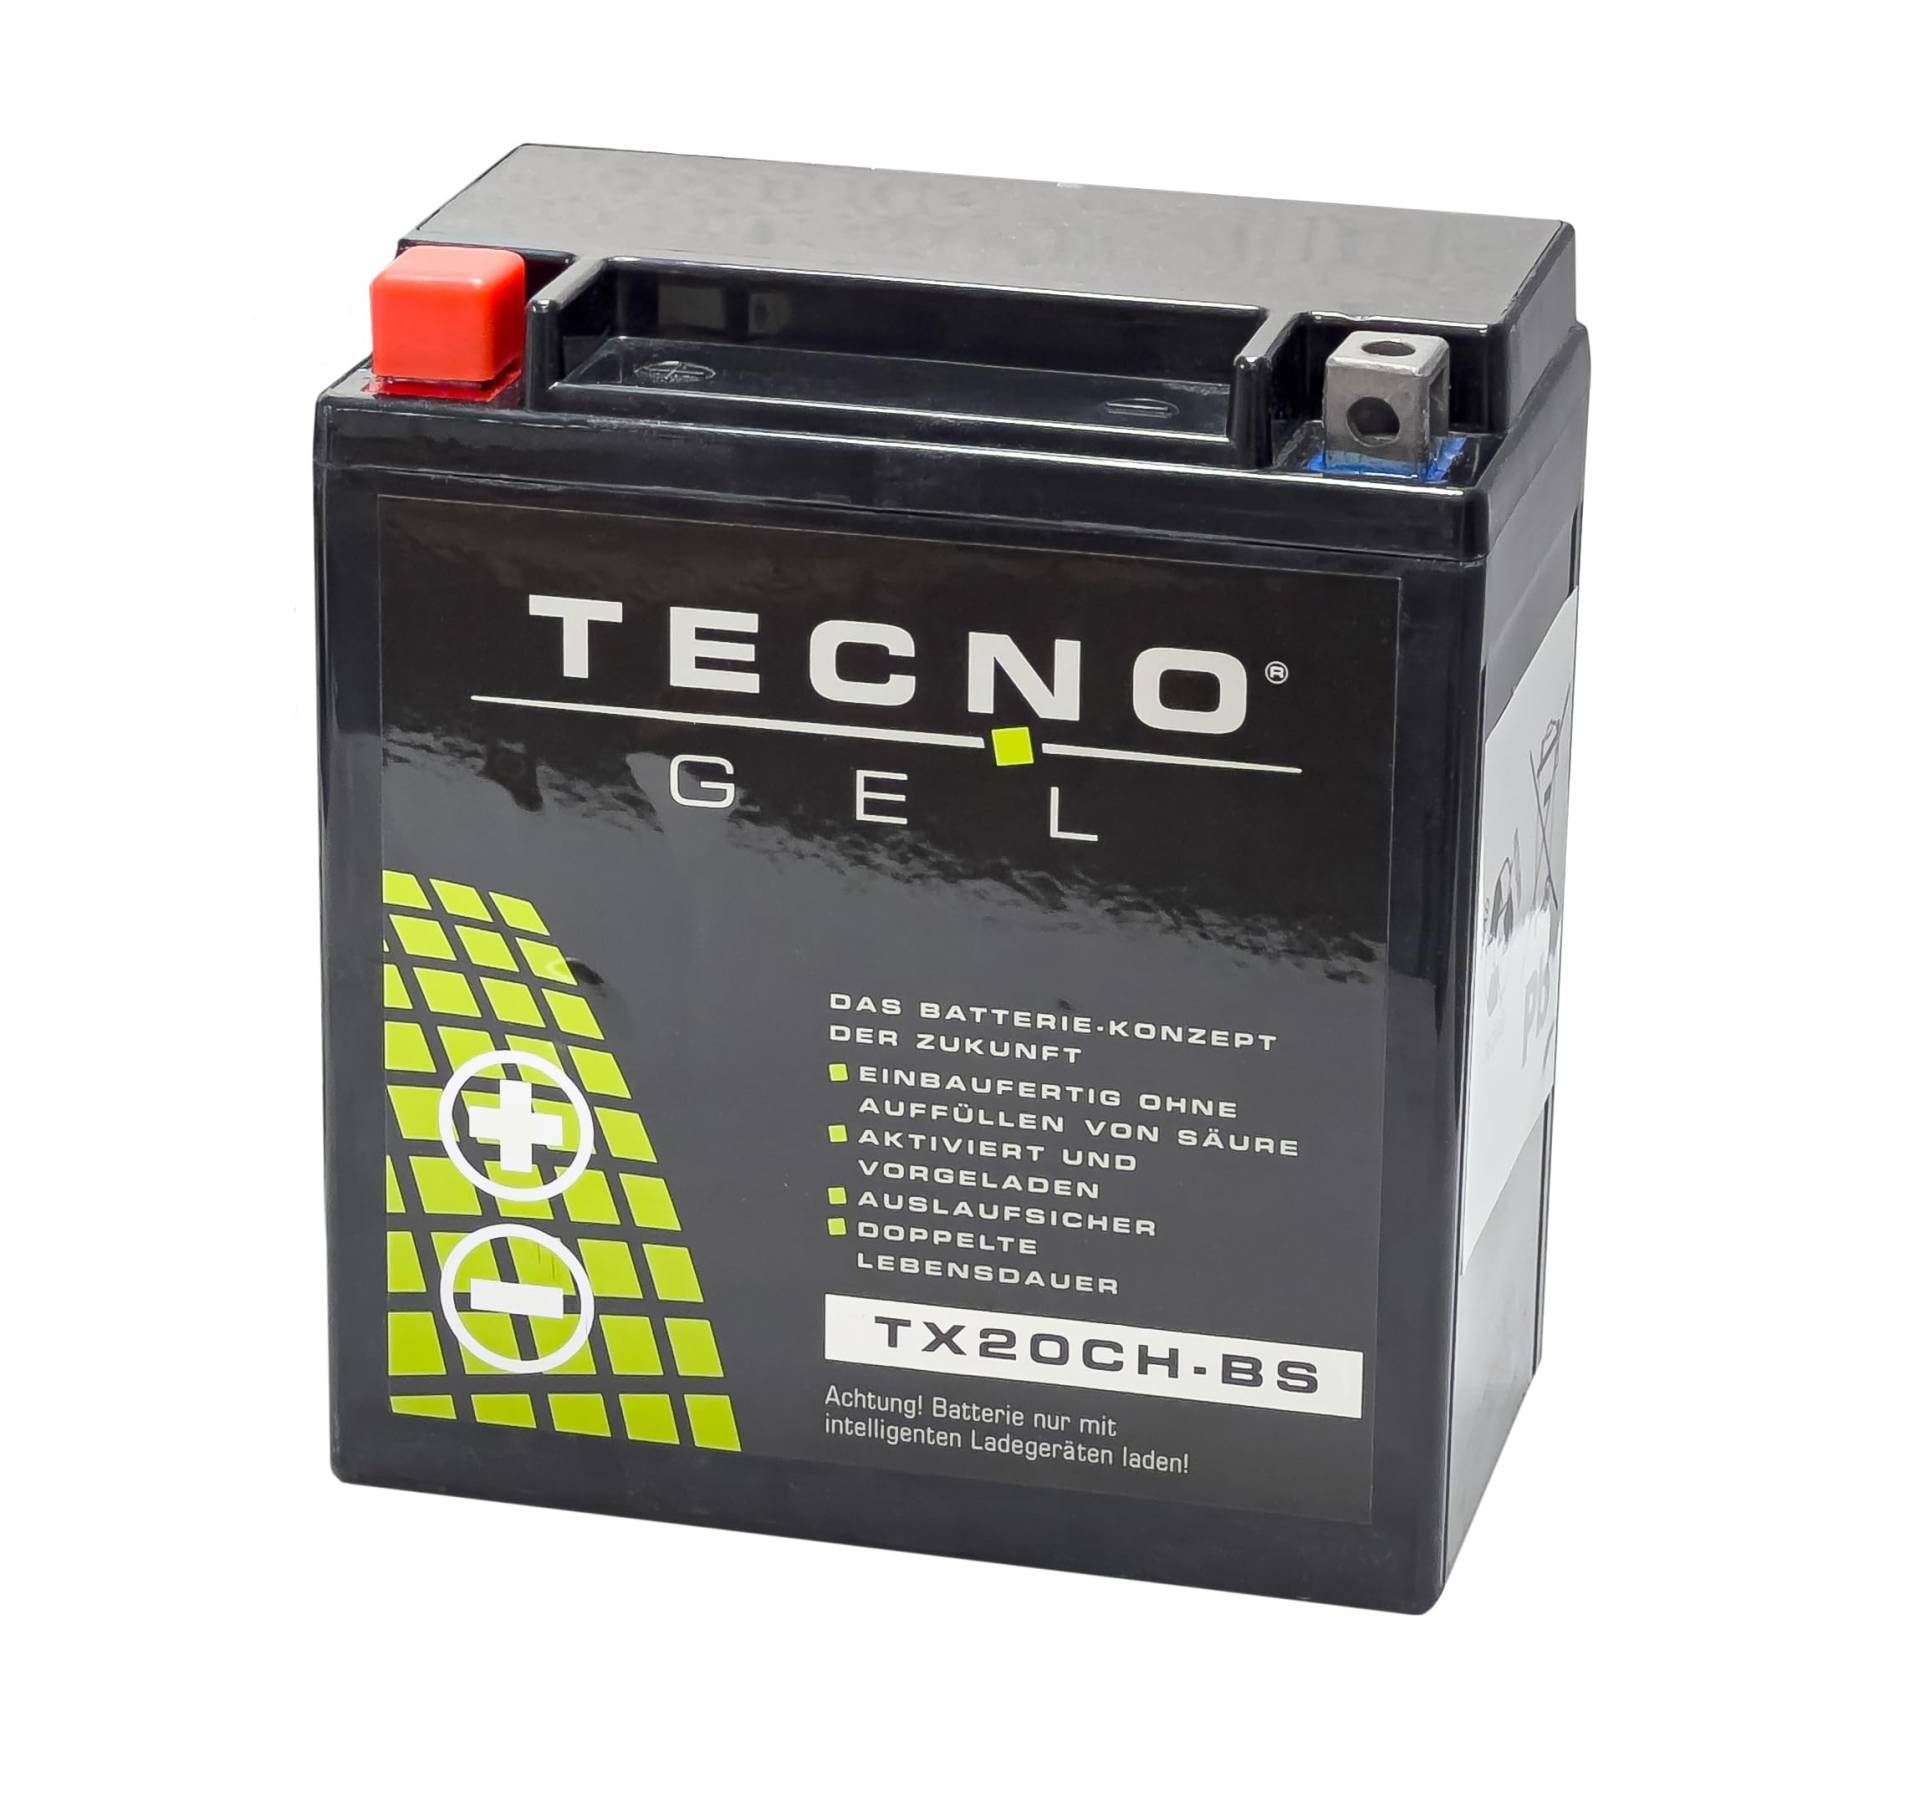 TECNO-GEL Motorrad-Batterie für YTX20CH-BS für KAWASAKI VN 1700 Classic, Tourer, Voyager, Vulcan 2009-2017, 12V Gel-Batterie 18AH, 150x87x161 mm von Wirth-Federn